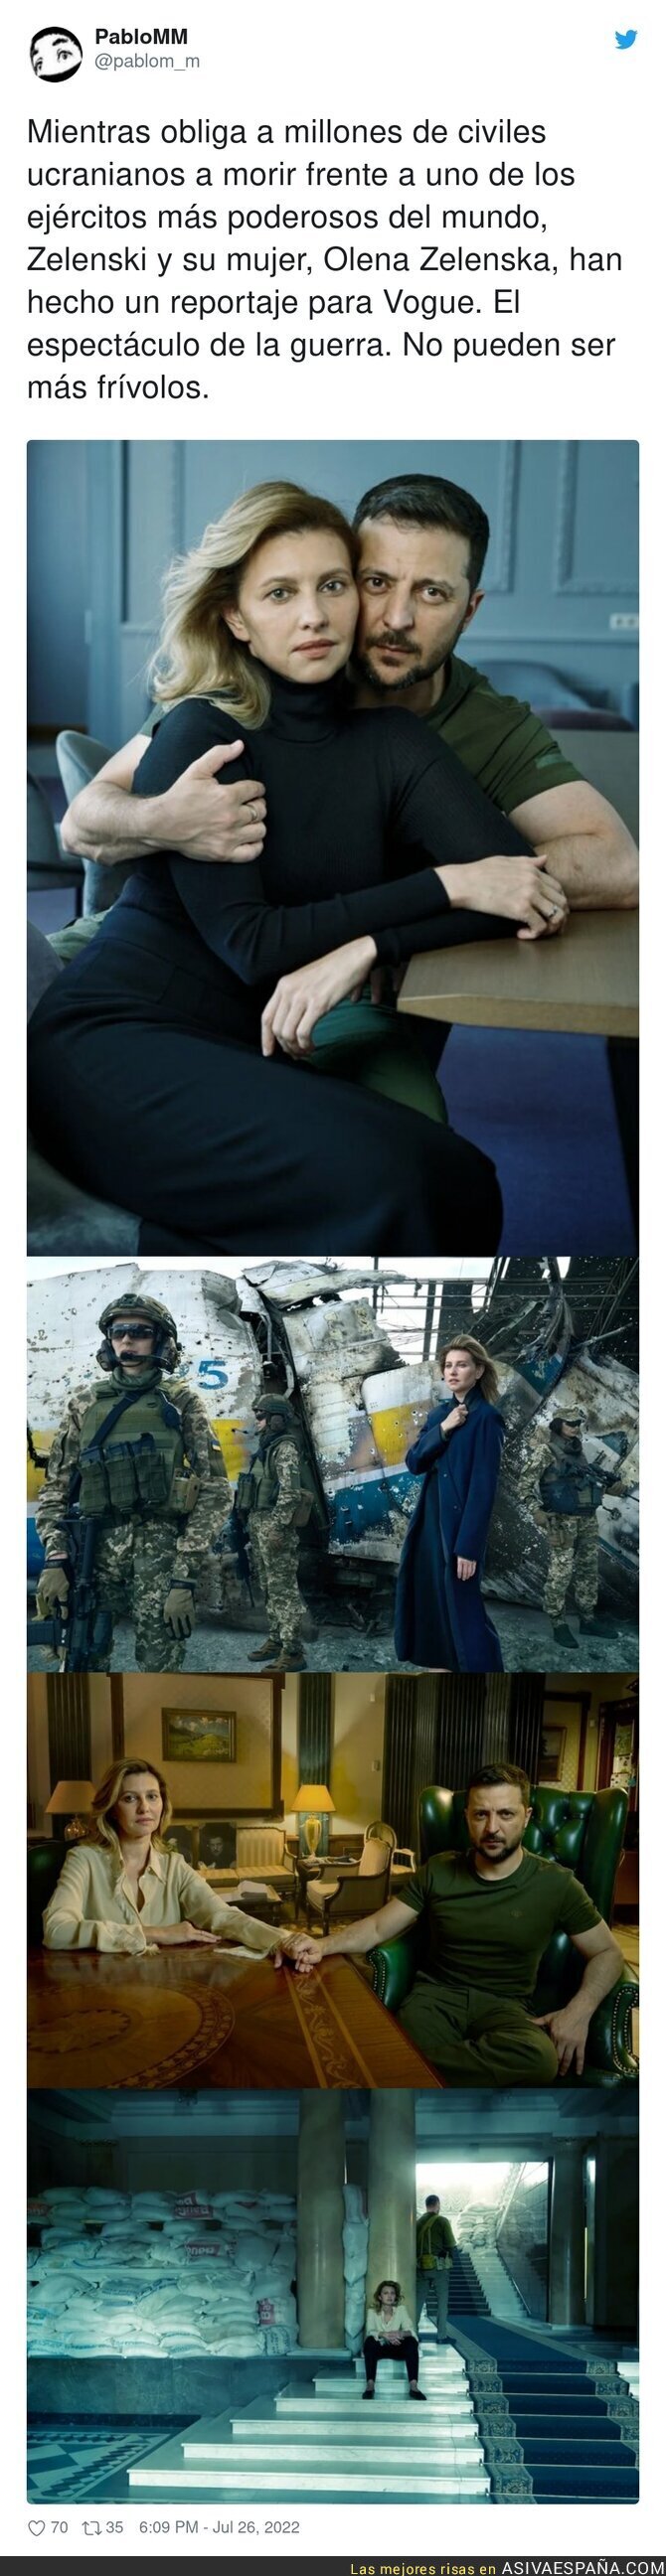 Zelenski y su mujer participan en un bochornoso reportaje fotográfico en una revista de moda mientras su país está en guerra